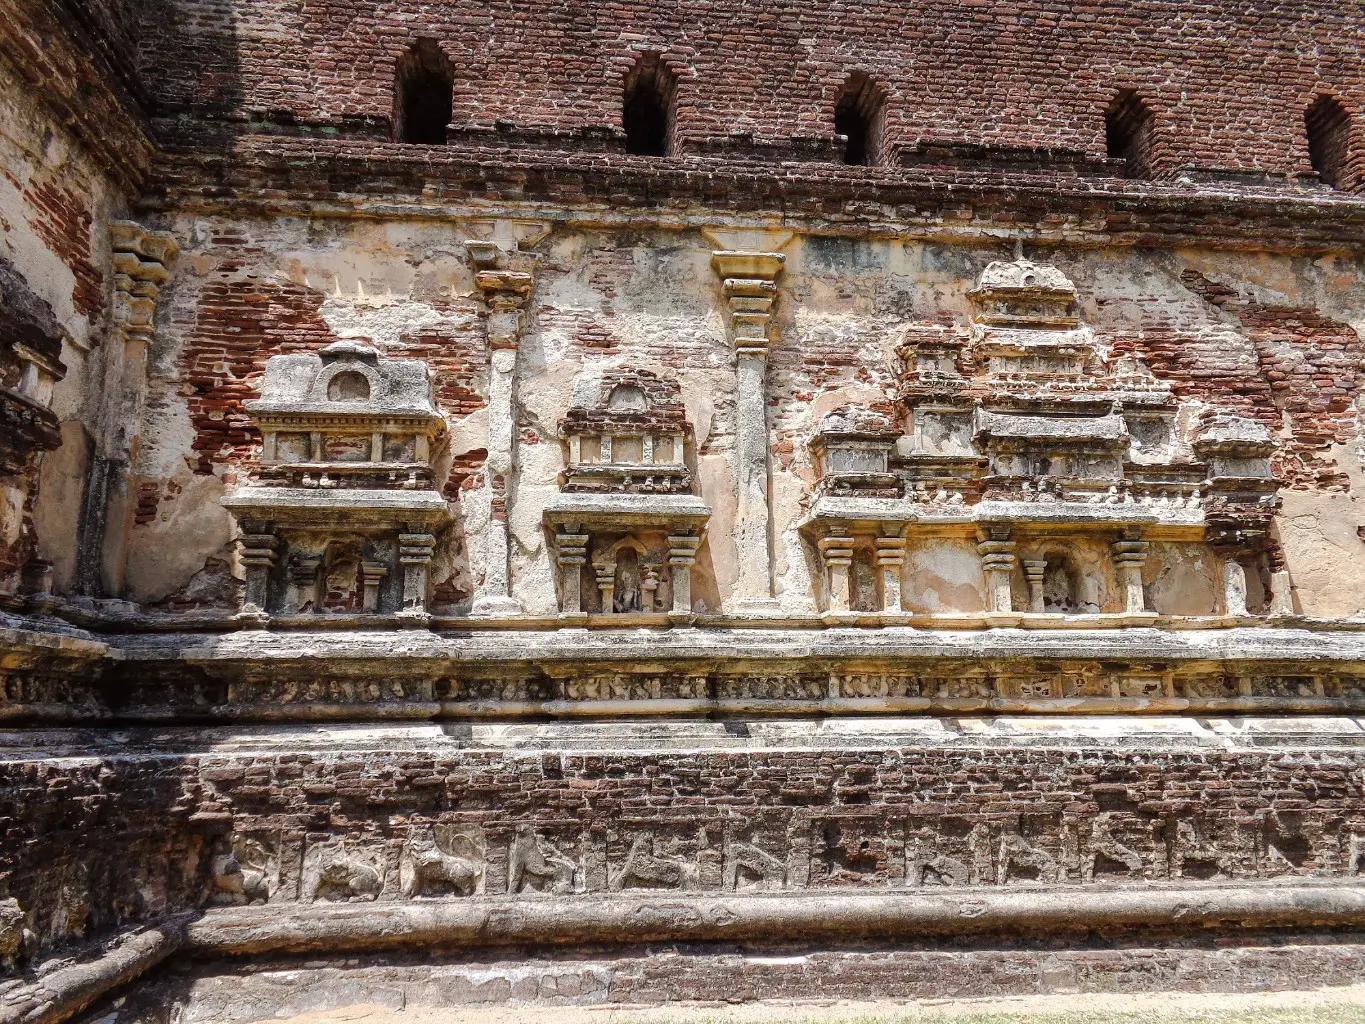 Lankathilaka-Viharaya-Polonnaruwa-1